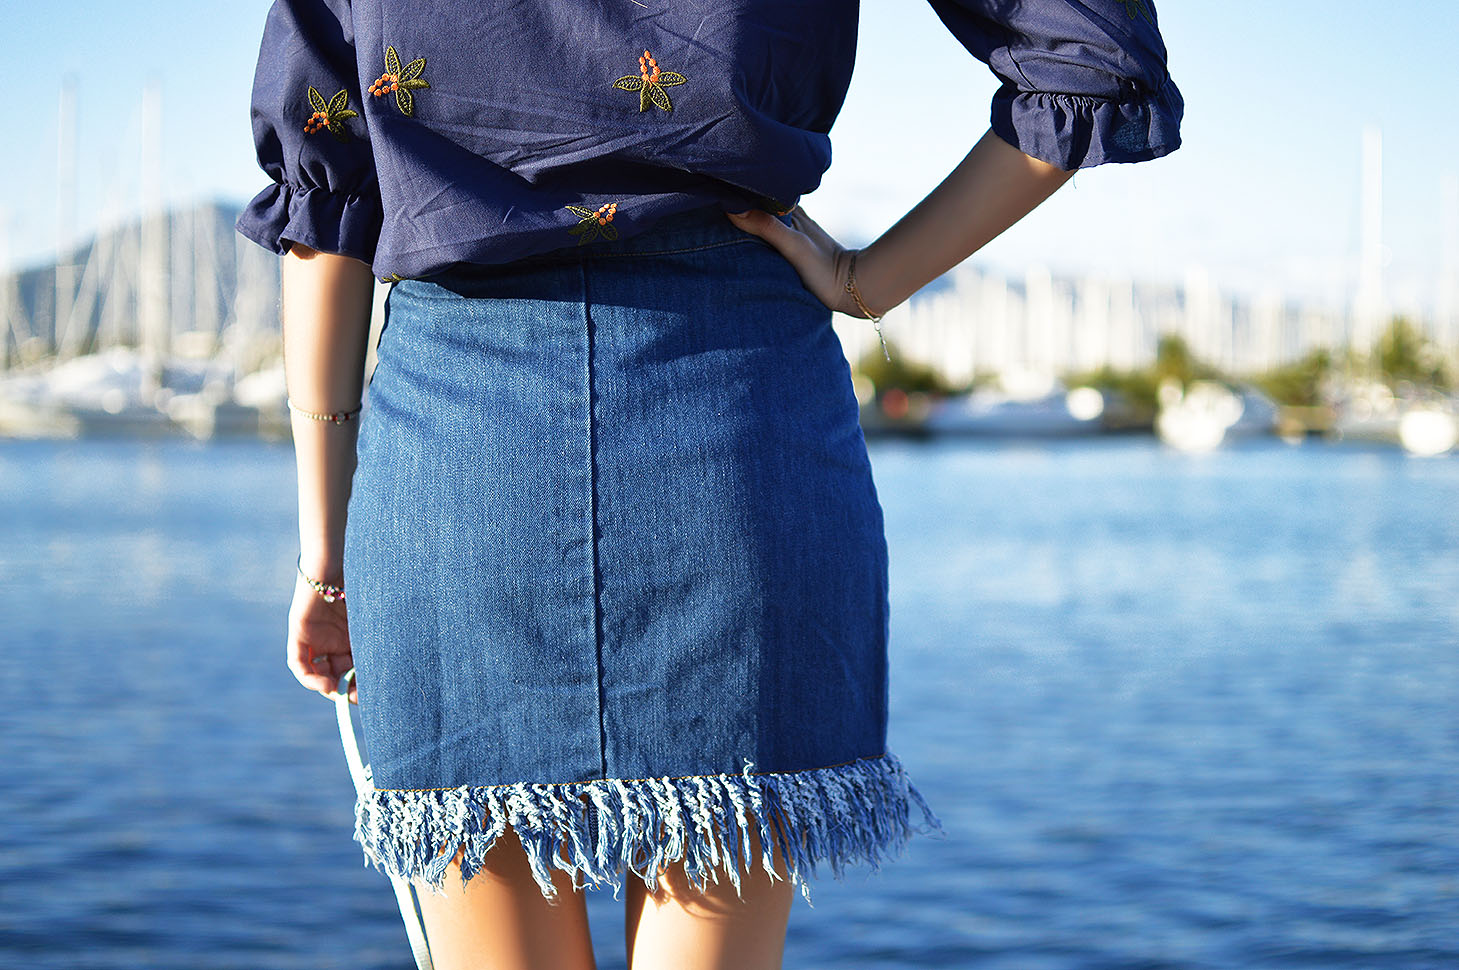 What a pretty skirt by Tamara Bellis